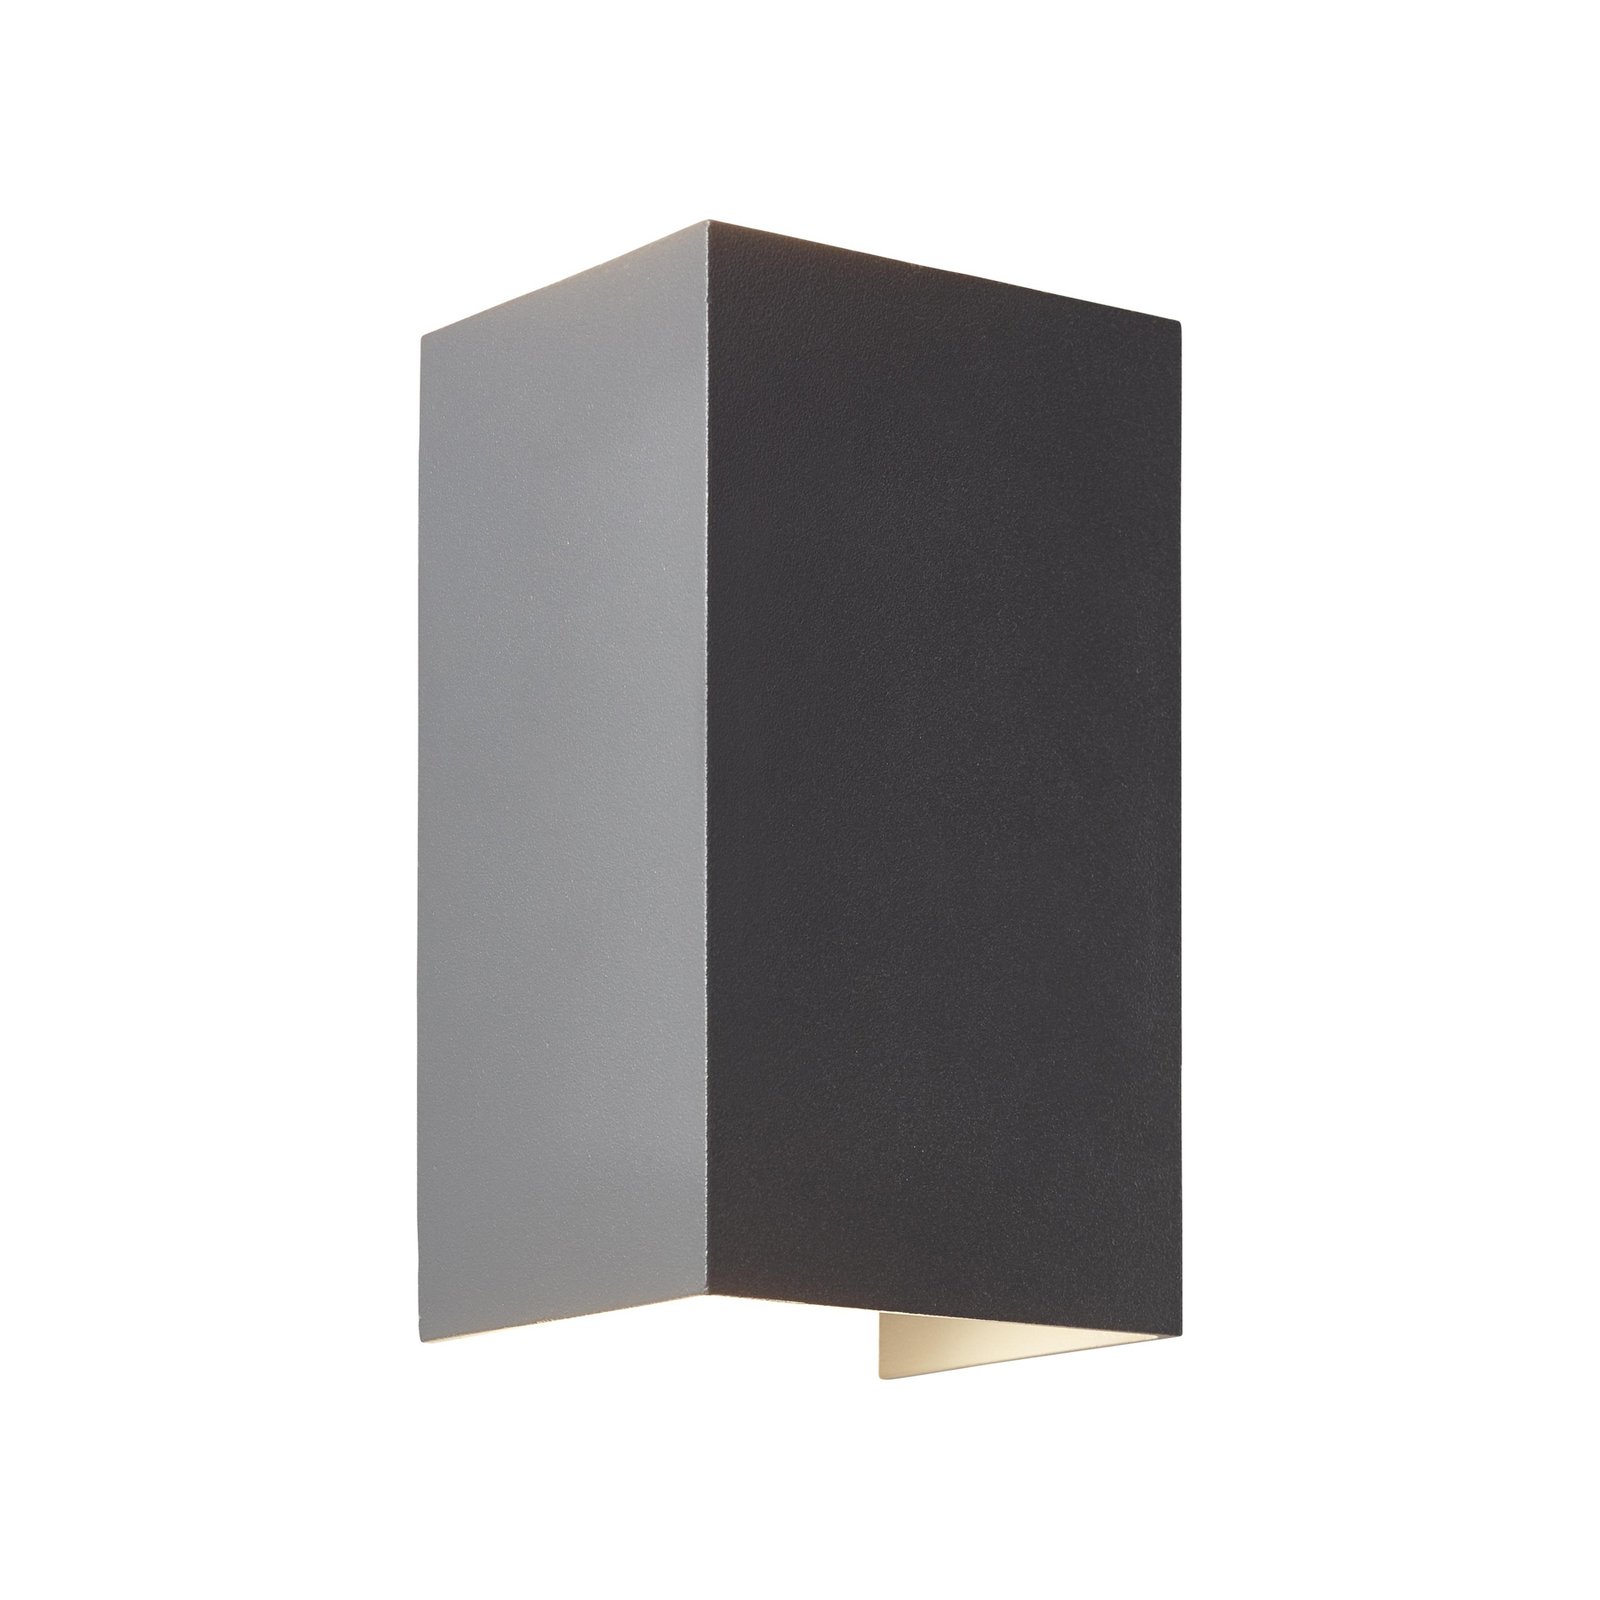 Hilly LED vanjska zidna svjetiljka, visina 13,6 cm, tamno siva, metal